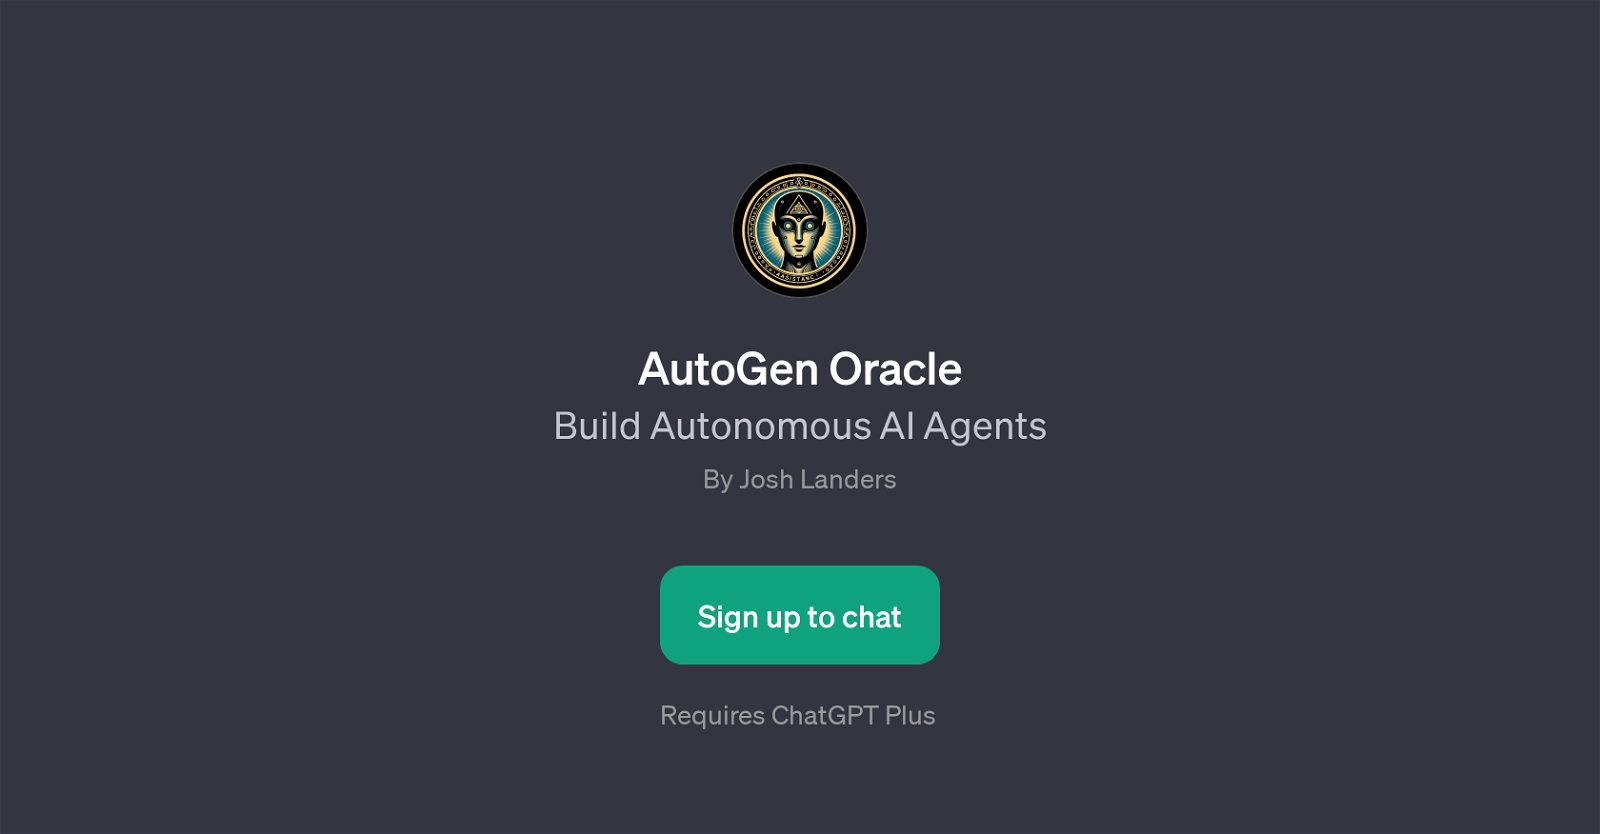 AutoGen Oracle website